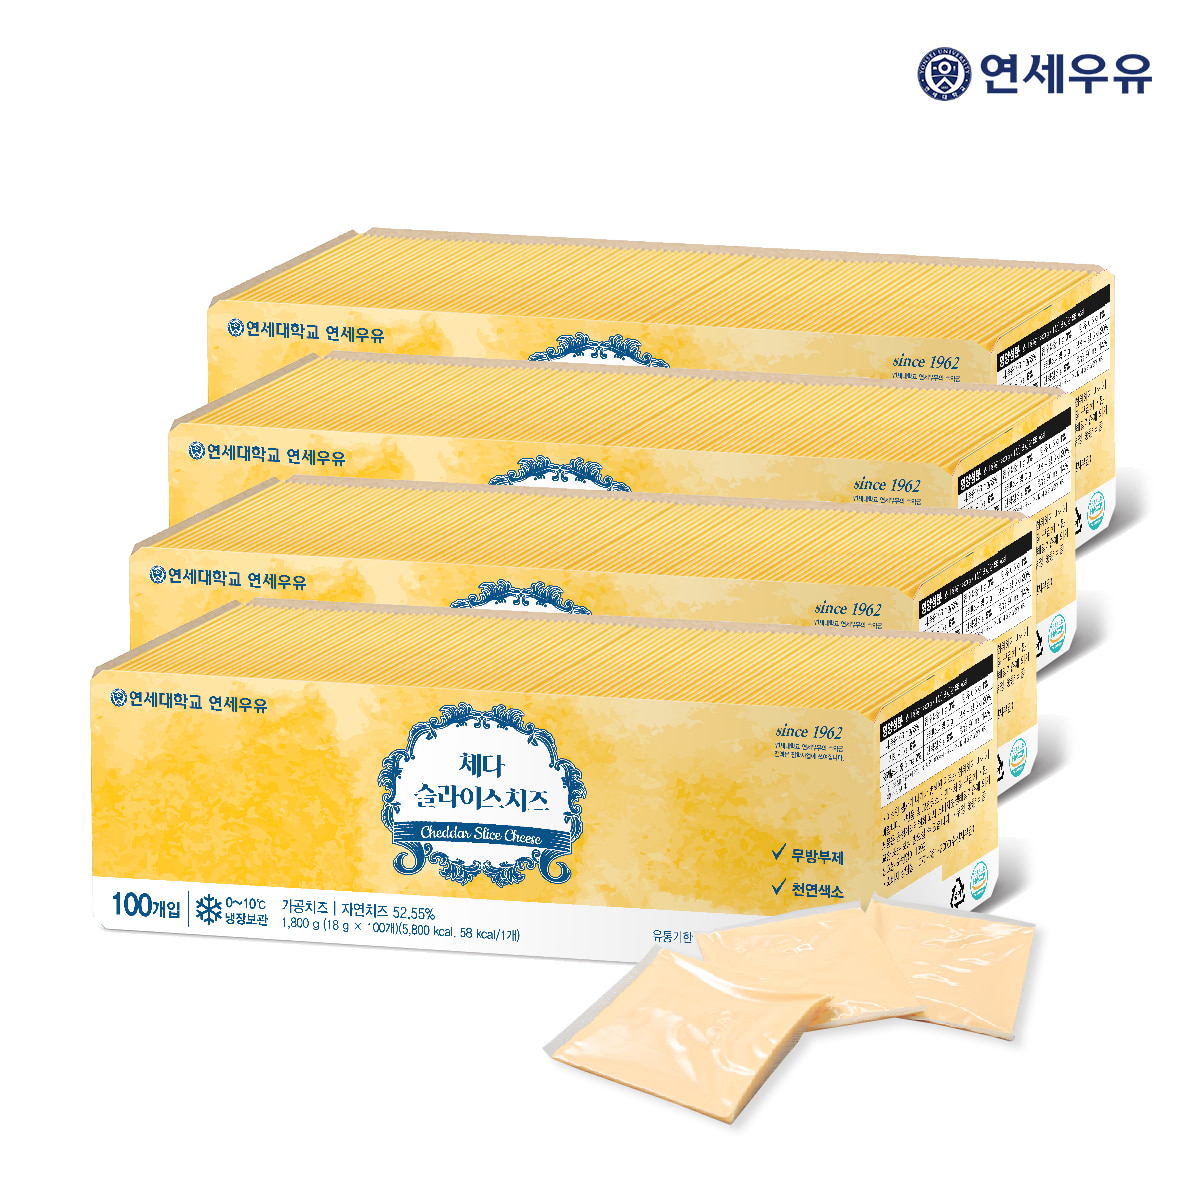 연세우유 체다 슬라이스 치즈 1800g 1박스(4개)